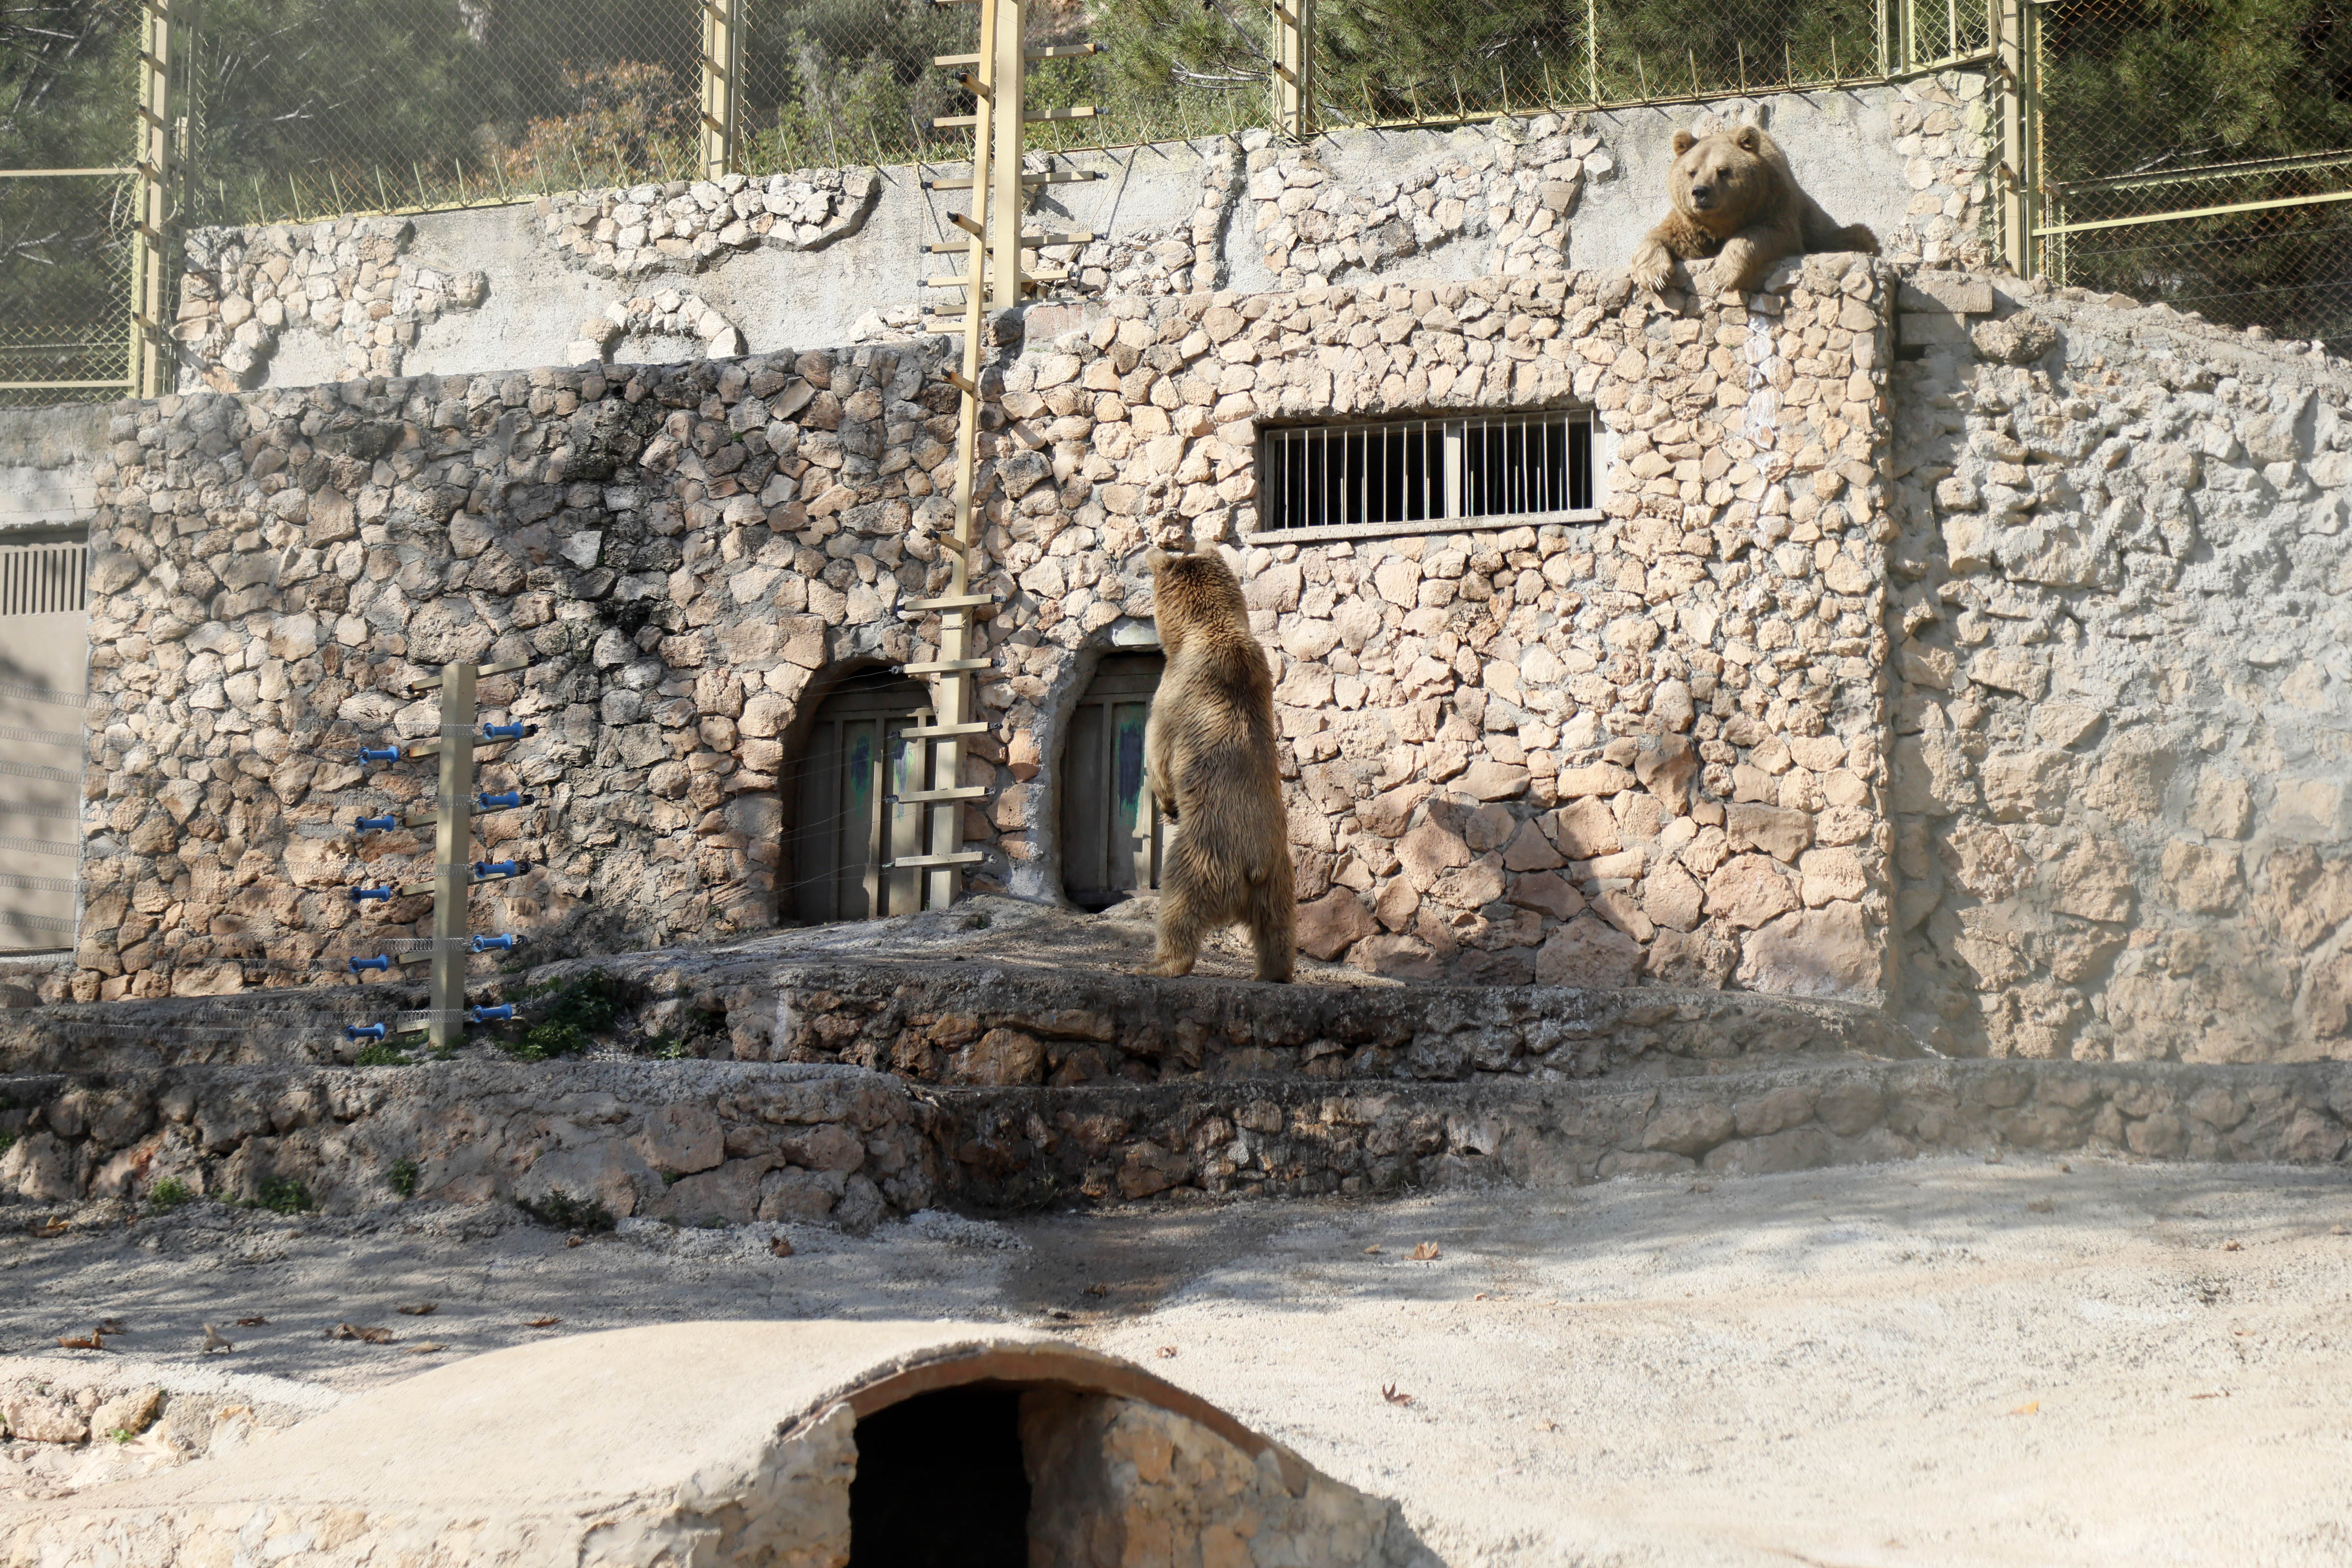 Antalya Hayvanat Bahcesindeki Hayvanlarda Yazdan Kalma Gunler Stresi 1973 Dhaphoto7